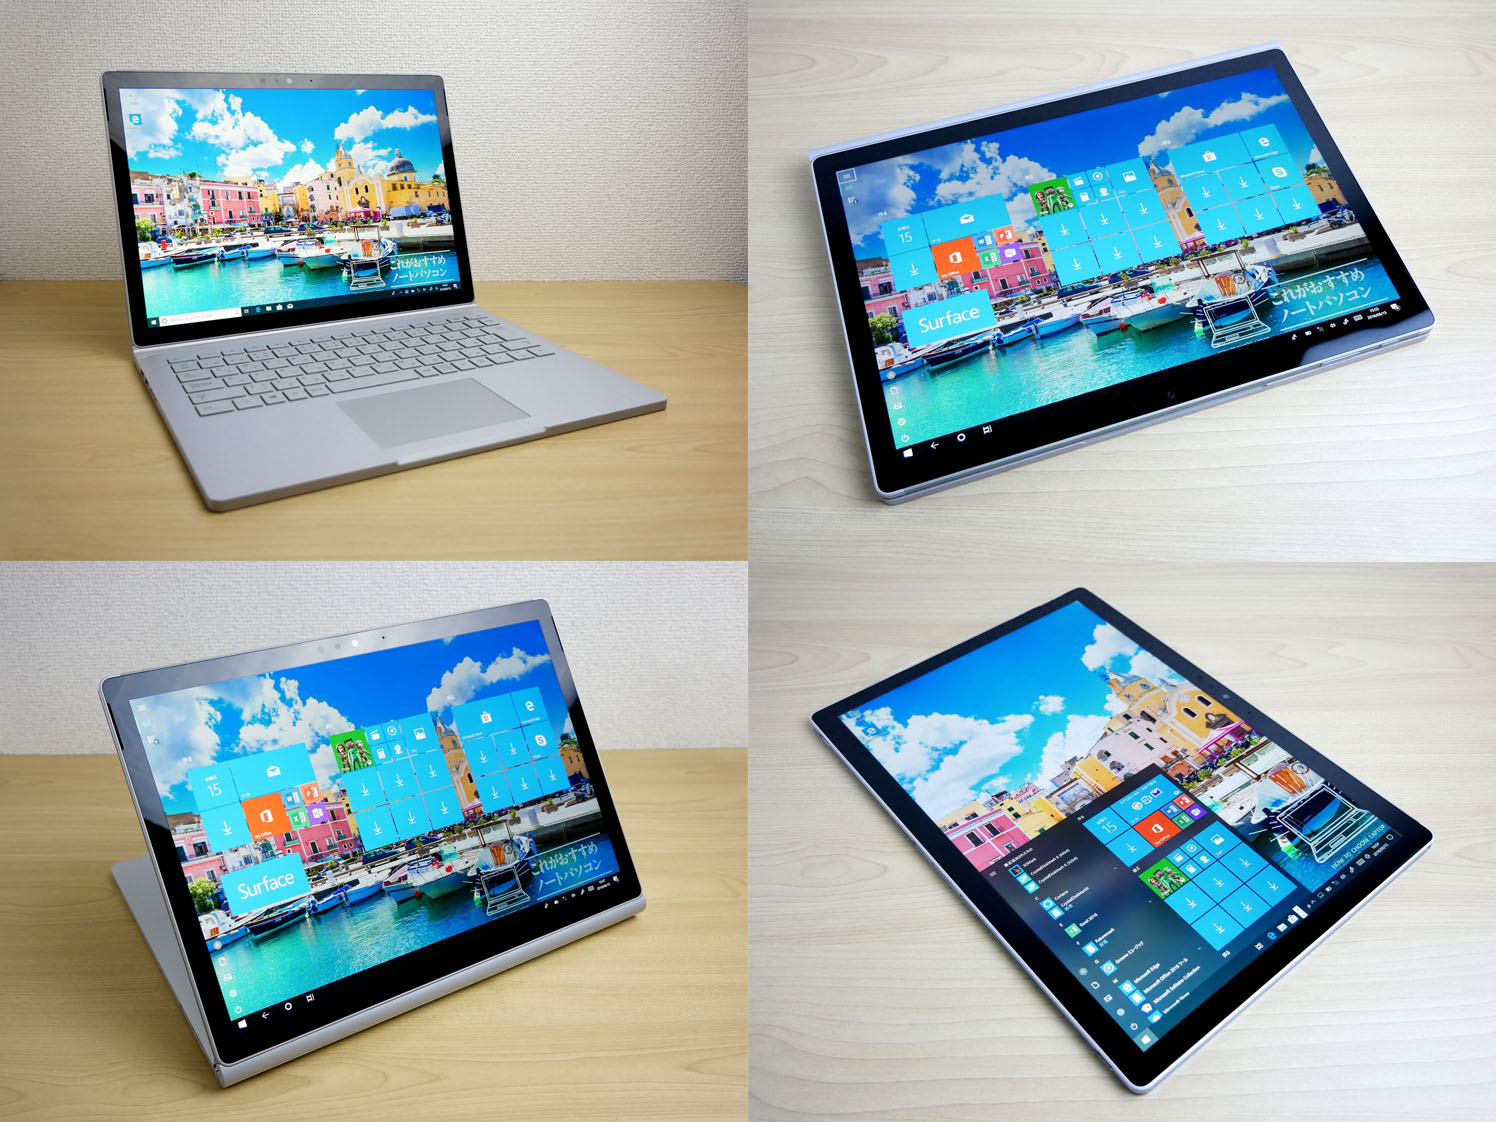 Surface Book 2 13 5インチ の実機レビュー 性能高し イラスト描きもいける これがおすすめノートパソコン